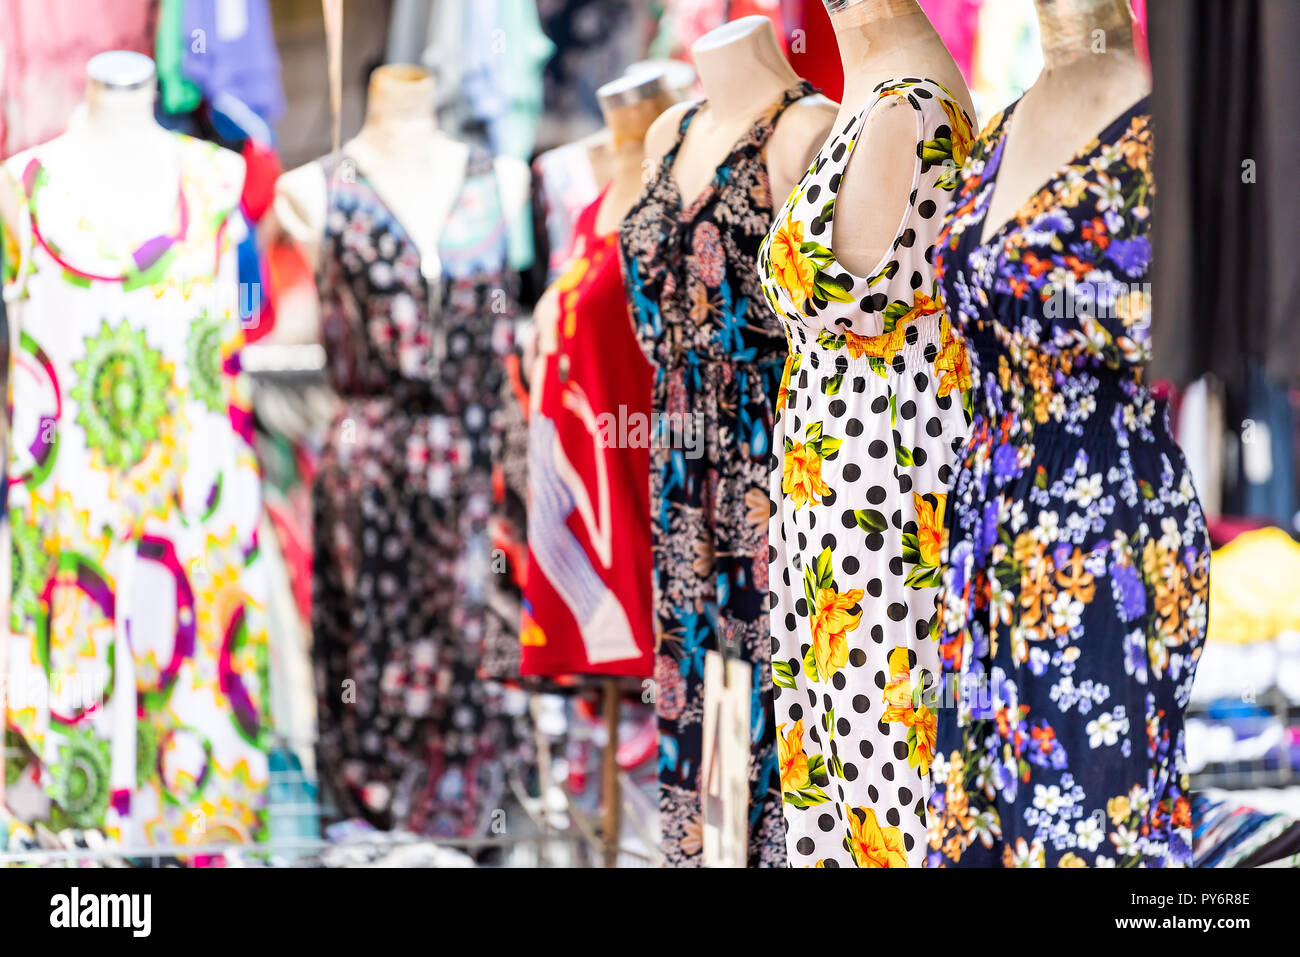 Nahaufnahme der viele bunte lebendige italienische Sommer Kleider mit  Mustern, Farben, hängen auf dem Display Mannequins in Shopping Street  Market in Rom, Italien Stockfotografie - Alamy